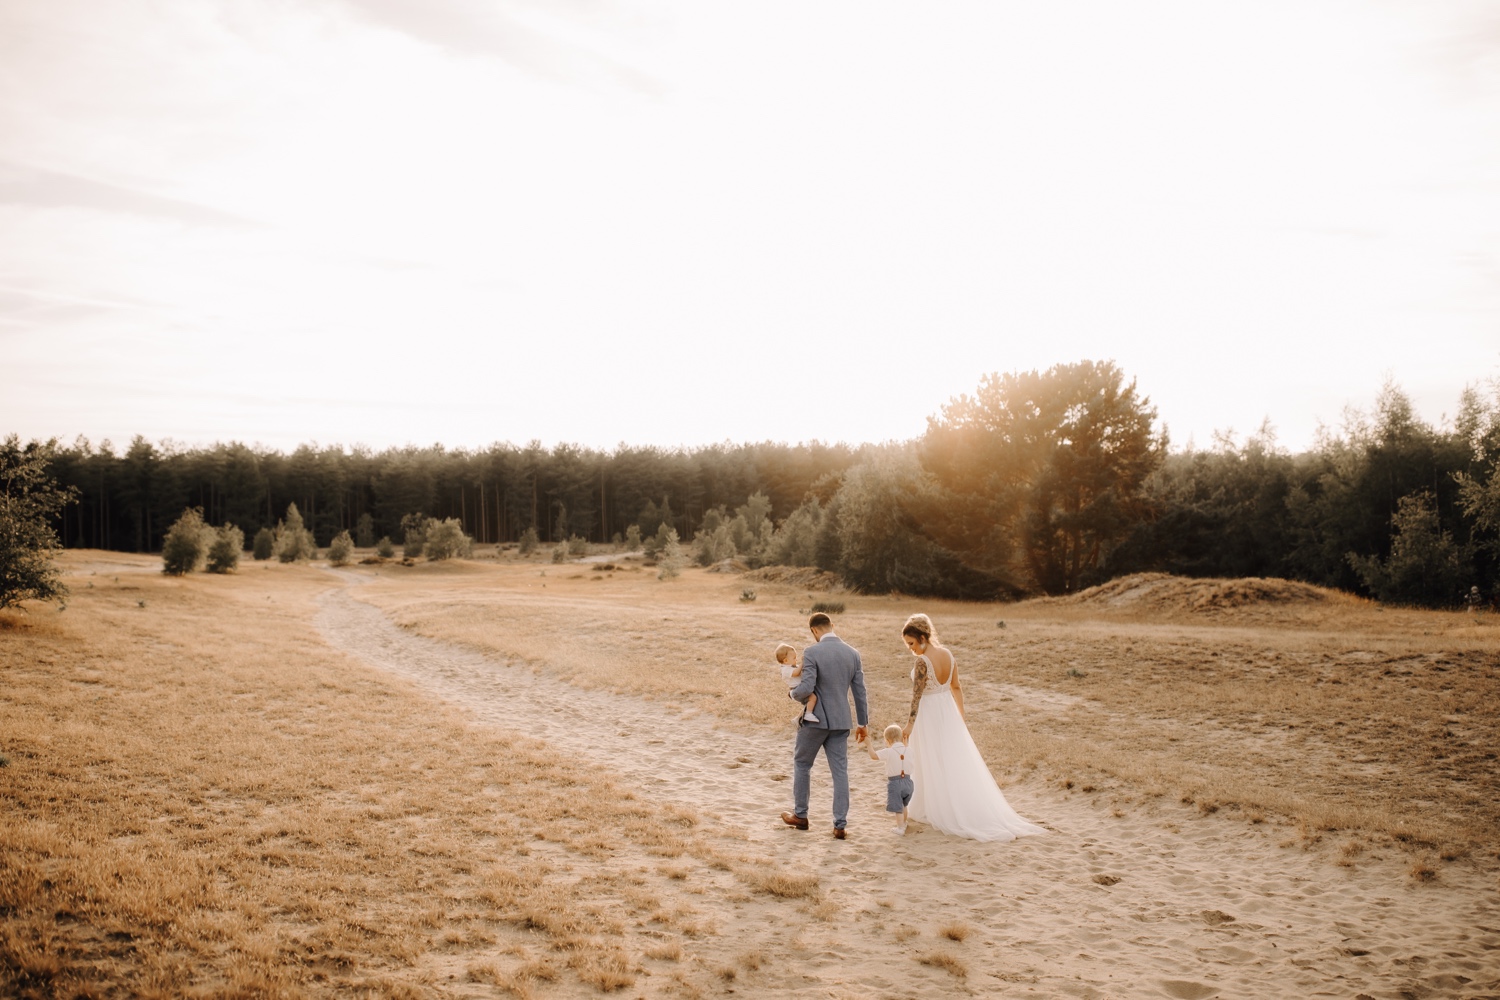 Huwelijksfotograaf Limburg - bruidspaar wandelt door veld samen met hun kinderen bij zonsondergang